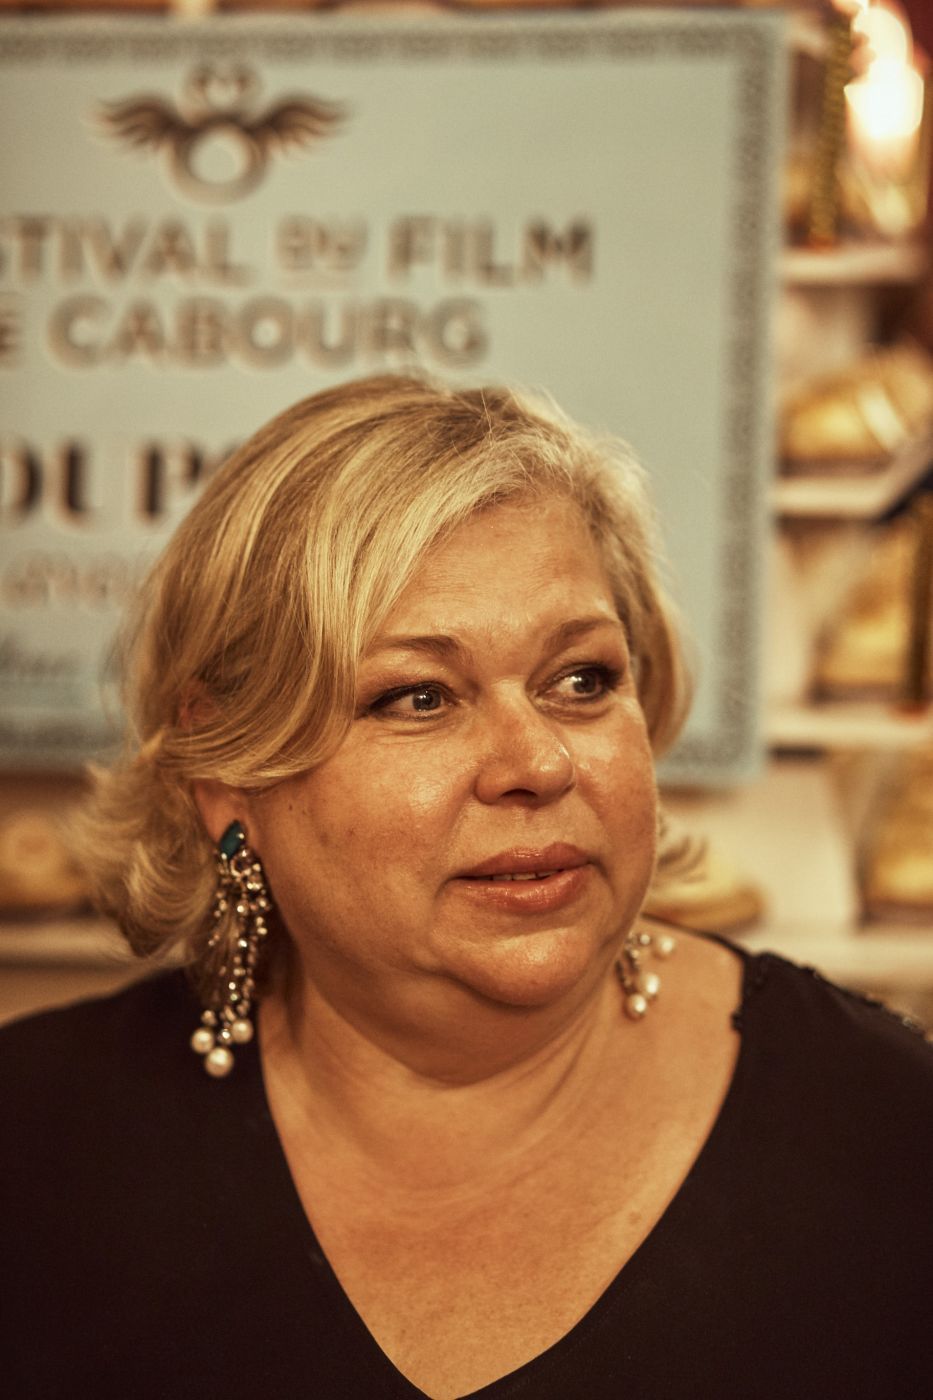 **Suzel Pietri,** Déléguée Générale du Festival du Film de Cabourg 
*(coiffure : Franck Provost, maquillage : Dr Hauschka)*